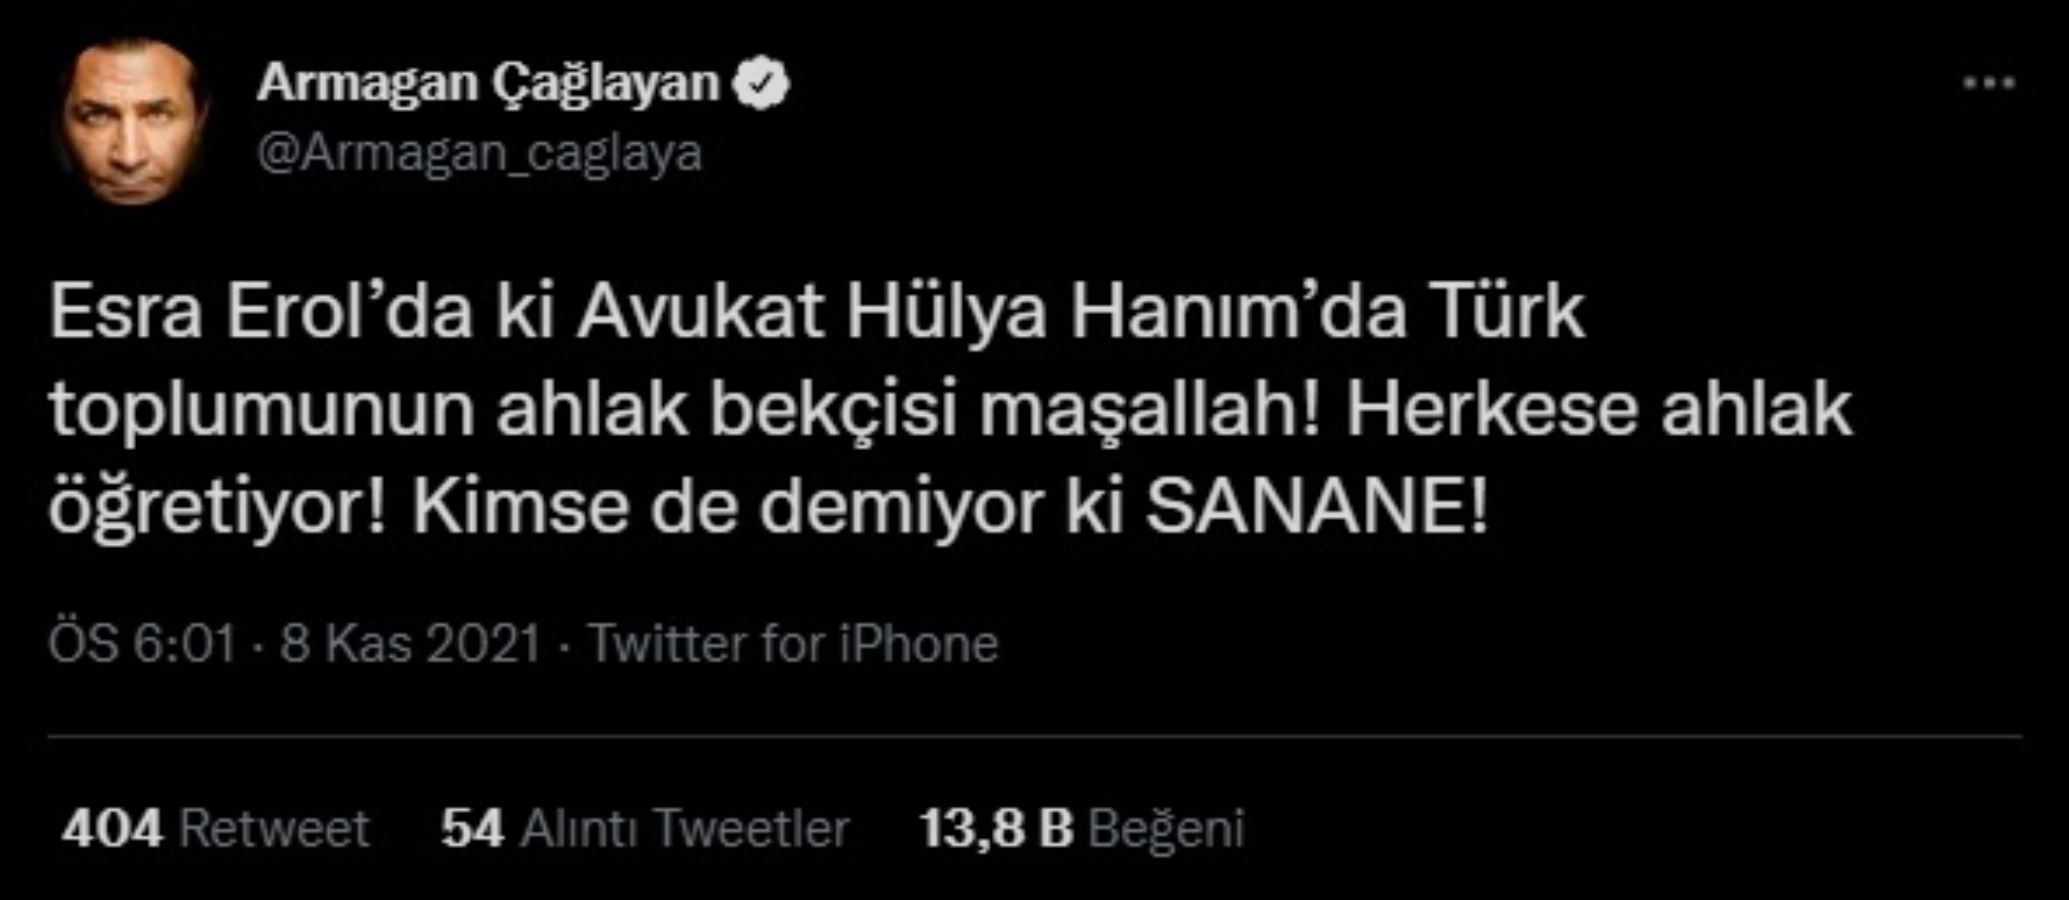 Armağan Çağlayan: Esra Erol’daki Avukat Hülya Hanım da Türk toplumunun ahlak bekçisi maşallah!